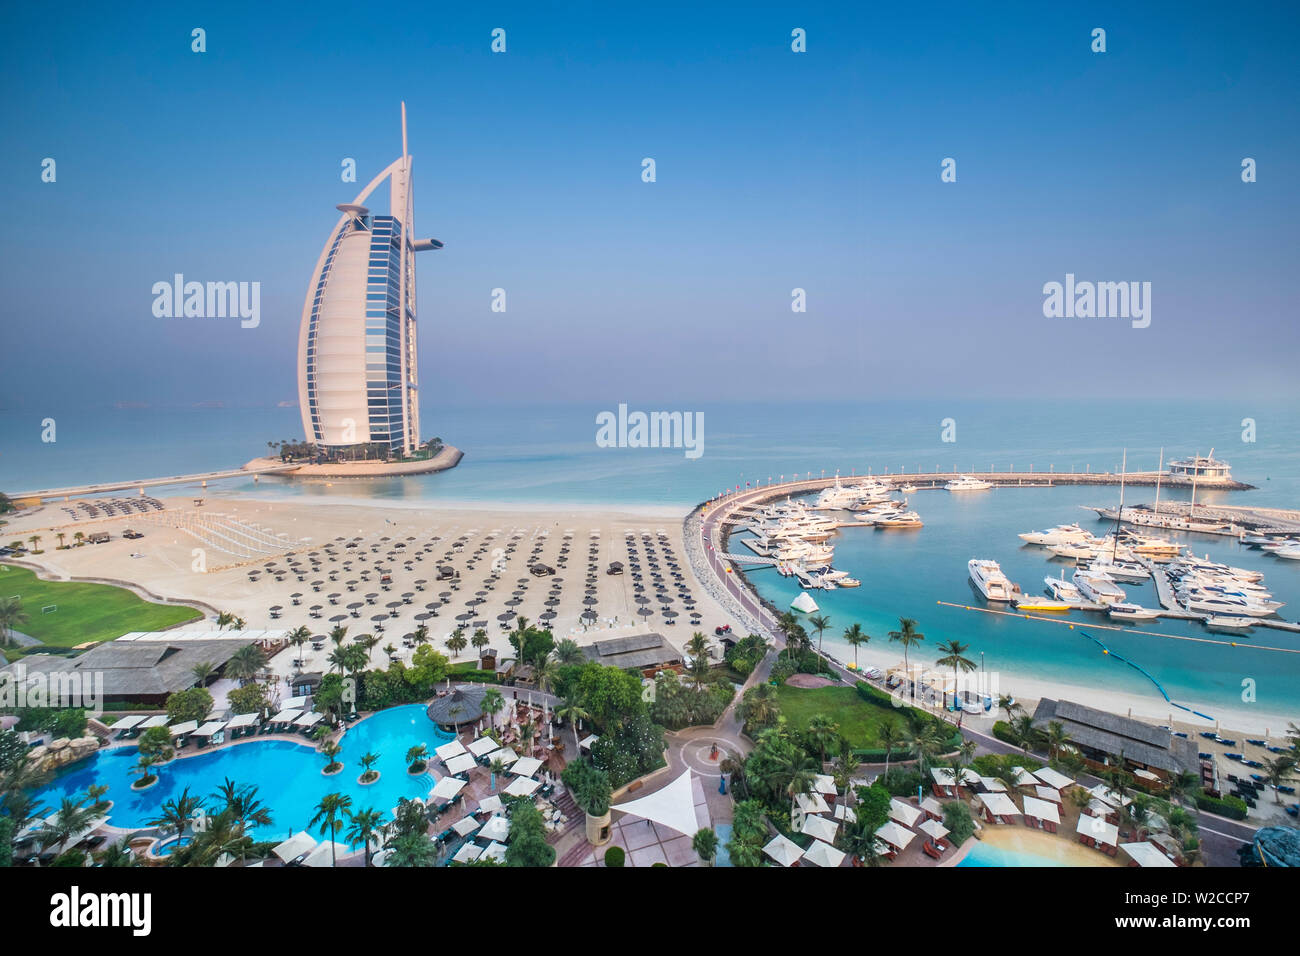 Burj al Arab, from the Jumeirah Beach Hotel, Dubai, UAE Stock Photo